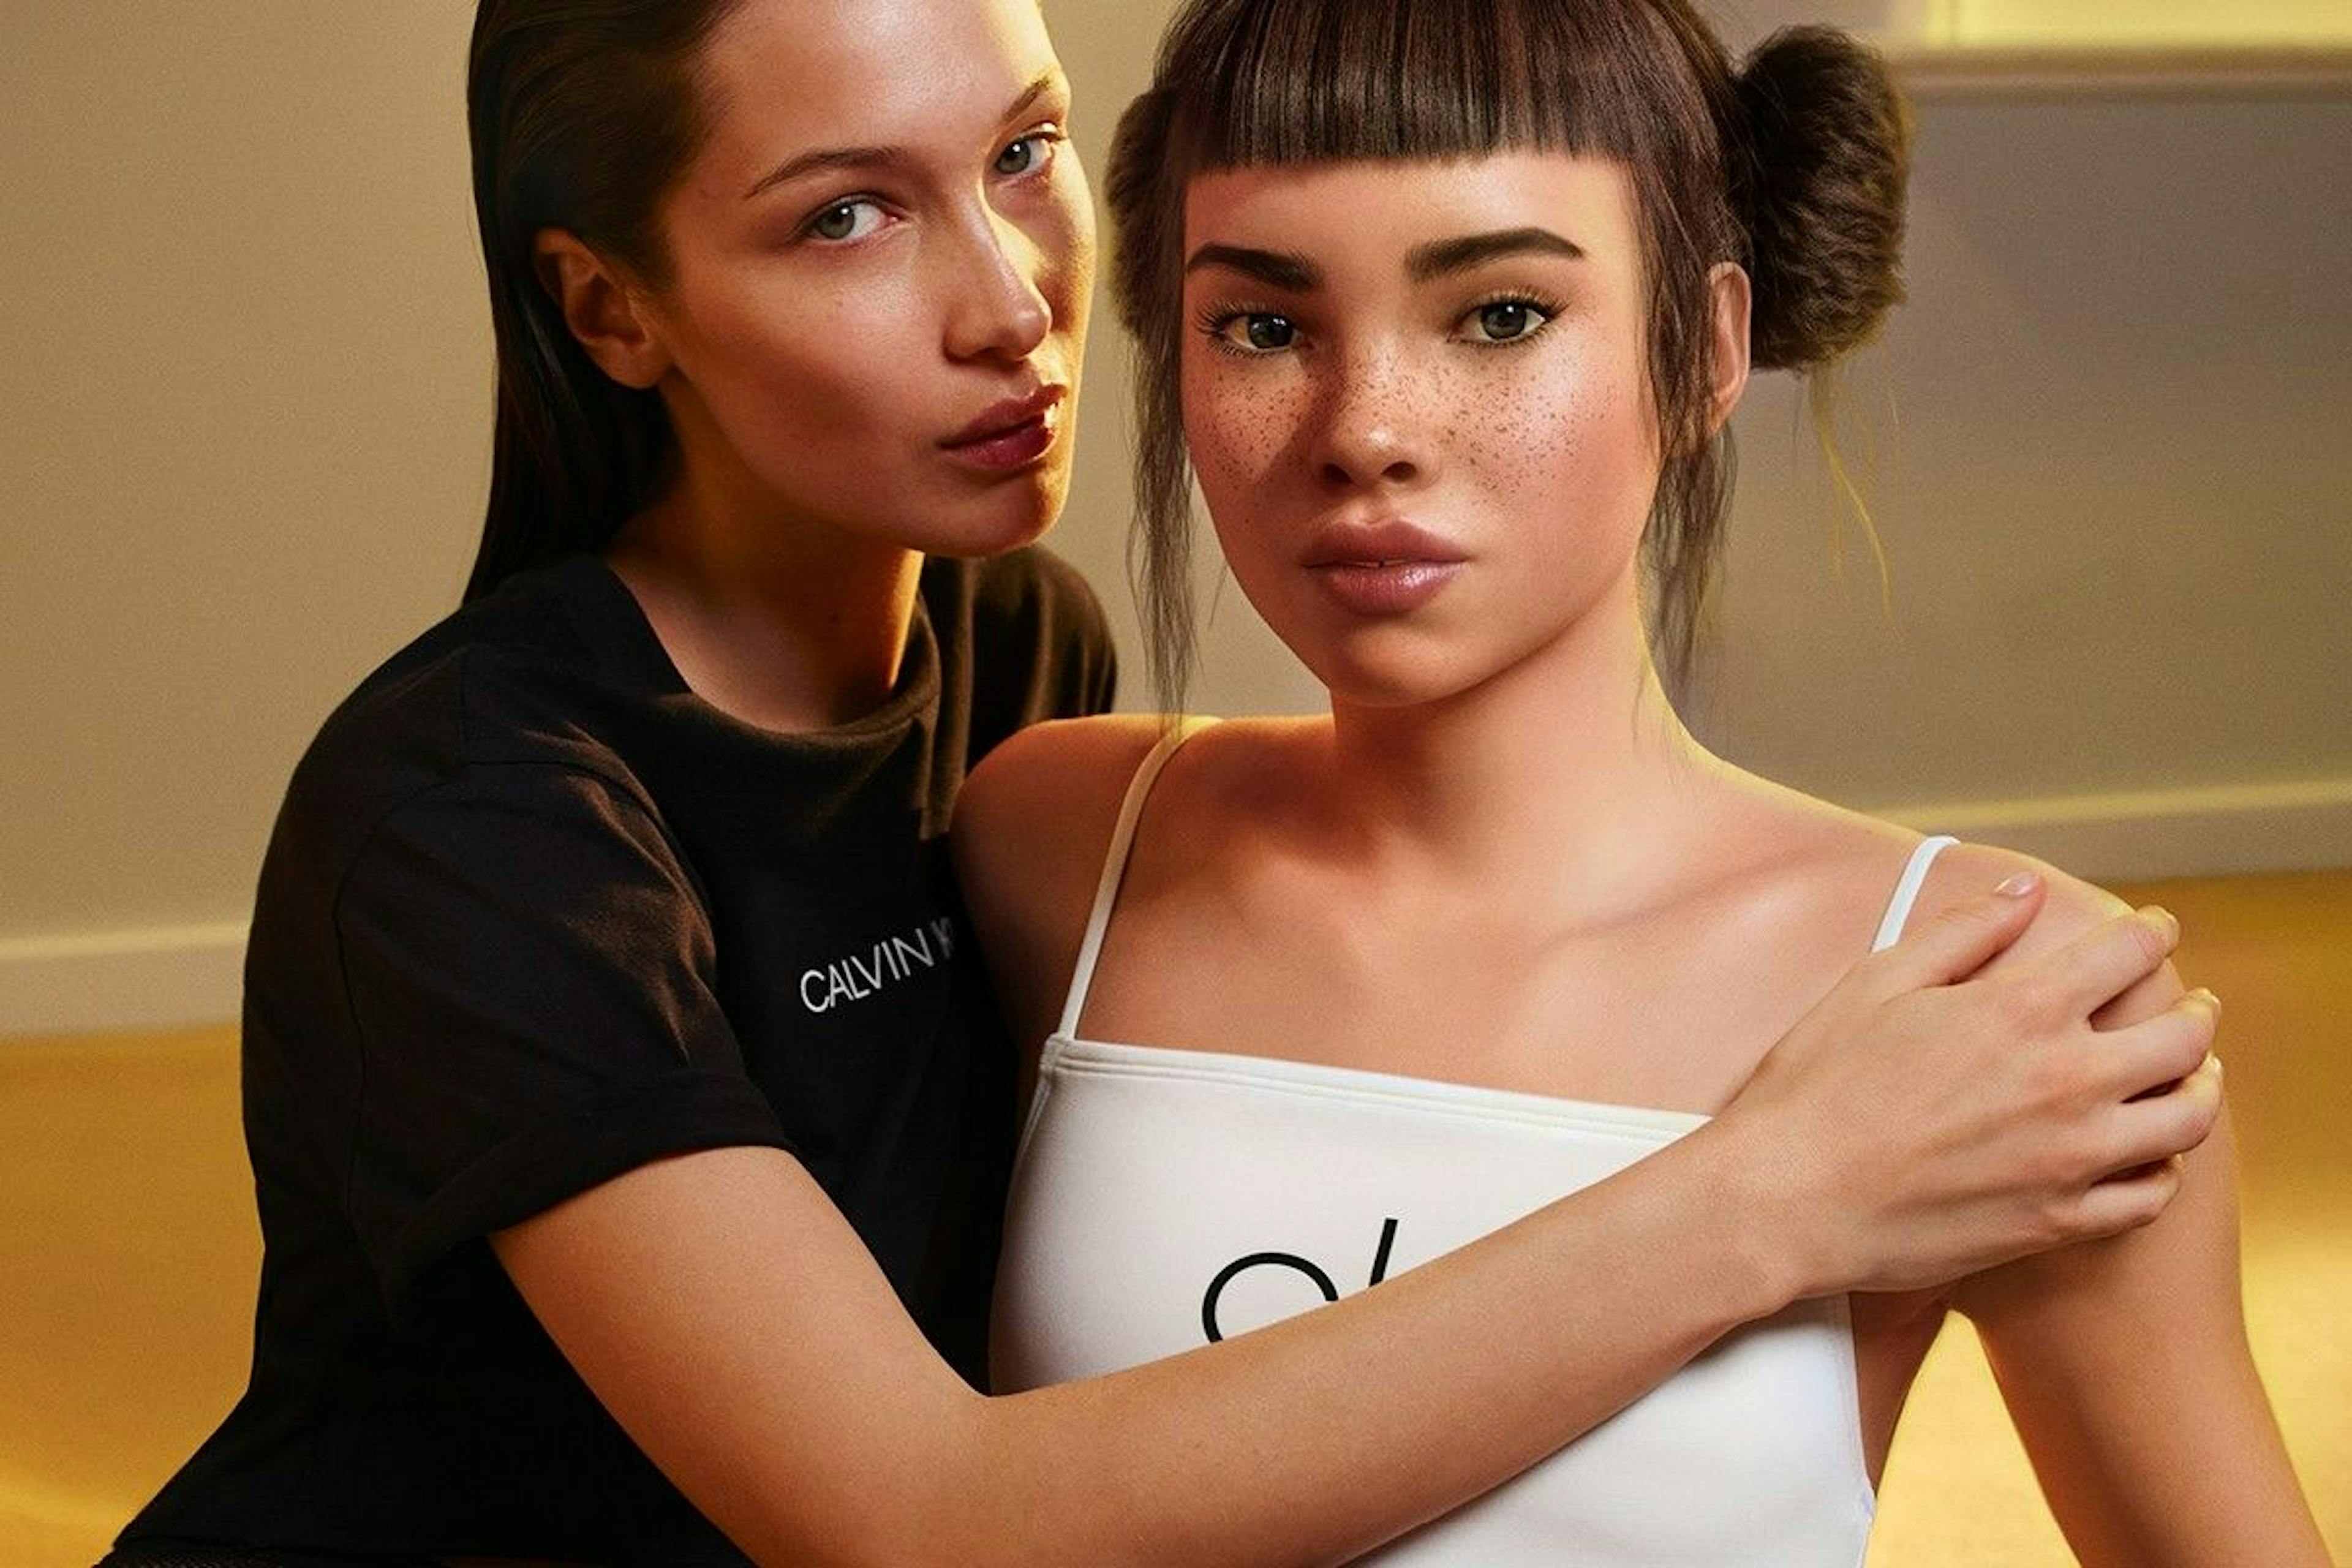 Người ảnh hưởng kỹ thuật số Lil Michela và người mẫu Bela Hadid cho chiến dịch quảng cáo Calvin Klein